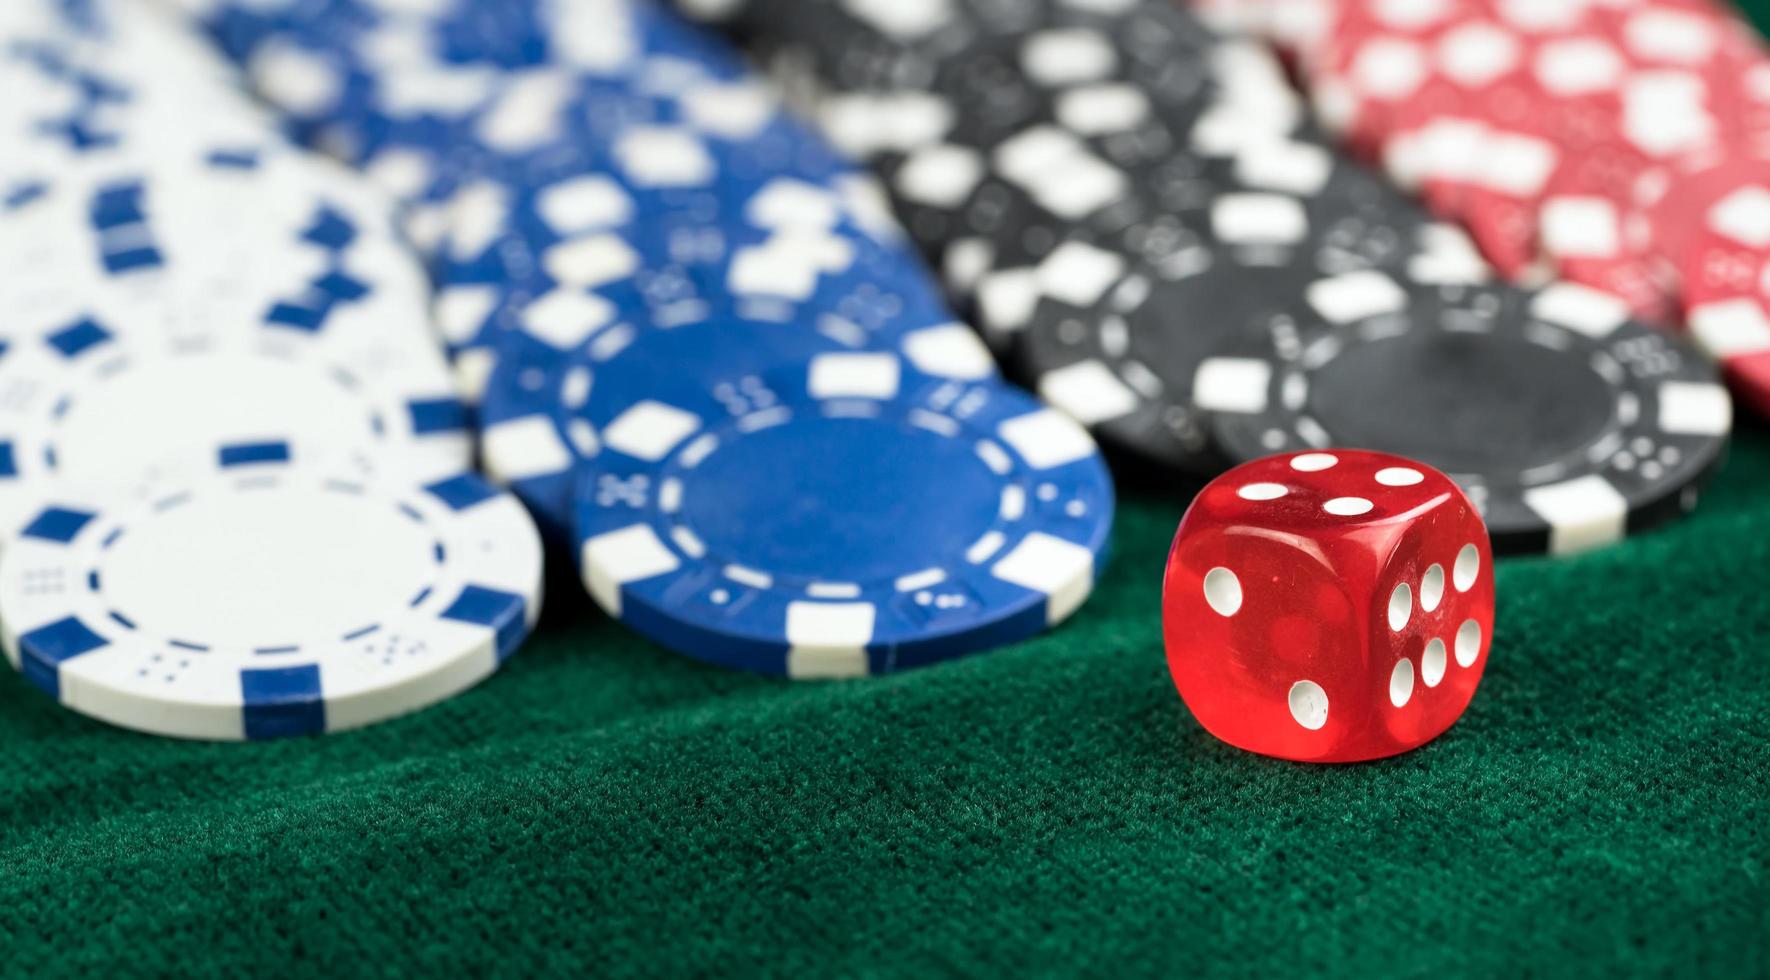 rode dobbelstenen en casinogeldmunten gokken foto